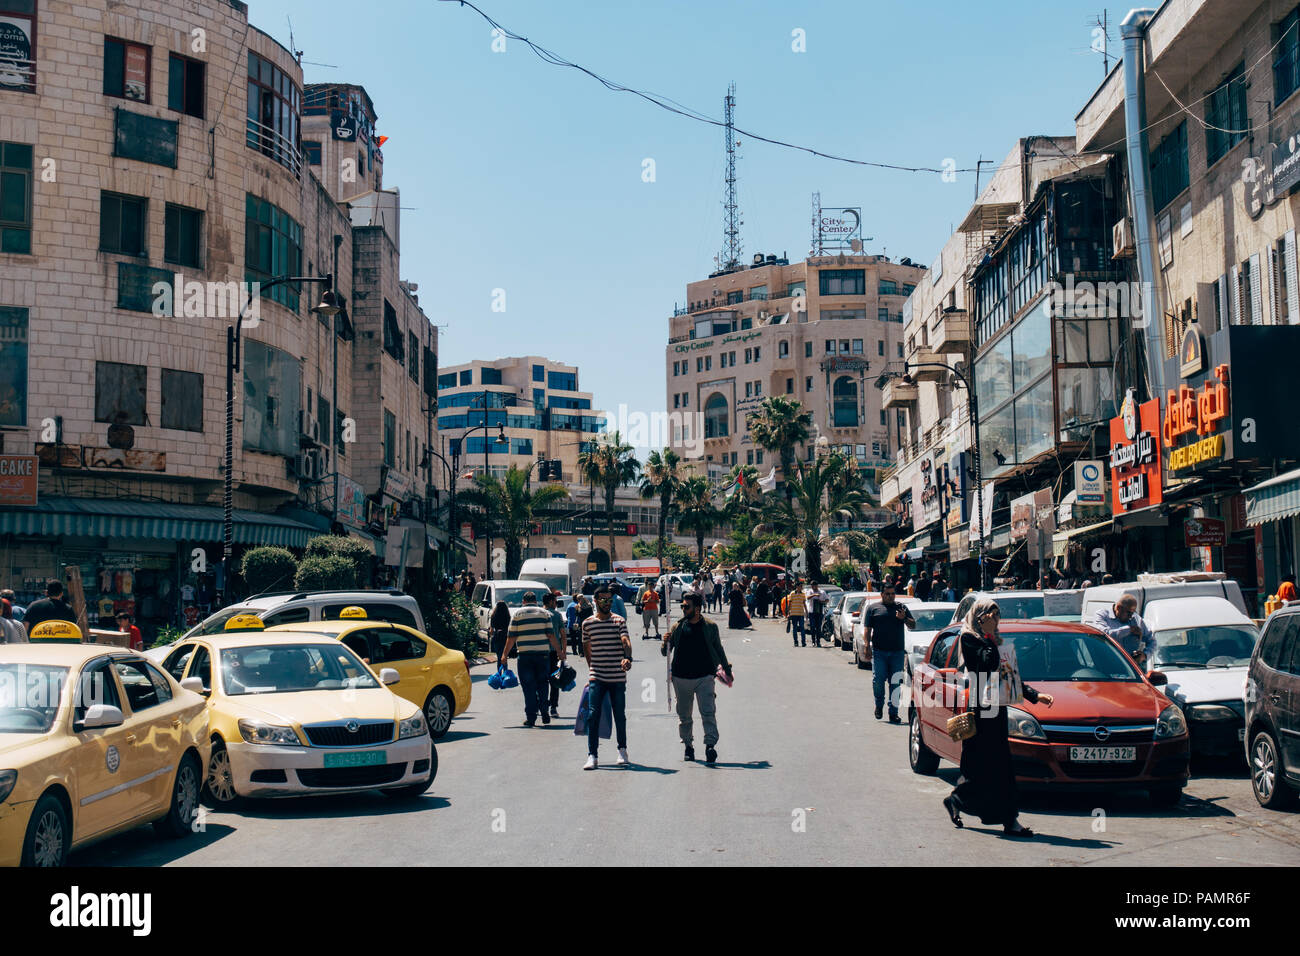 Les rues remplies de taxis et les personnes pendant un après-midi à Ramallah, la capitale de la Palestine et le centre administratif Banque D'Images